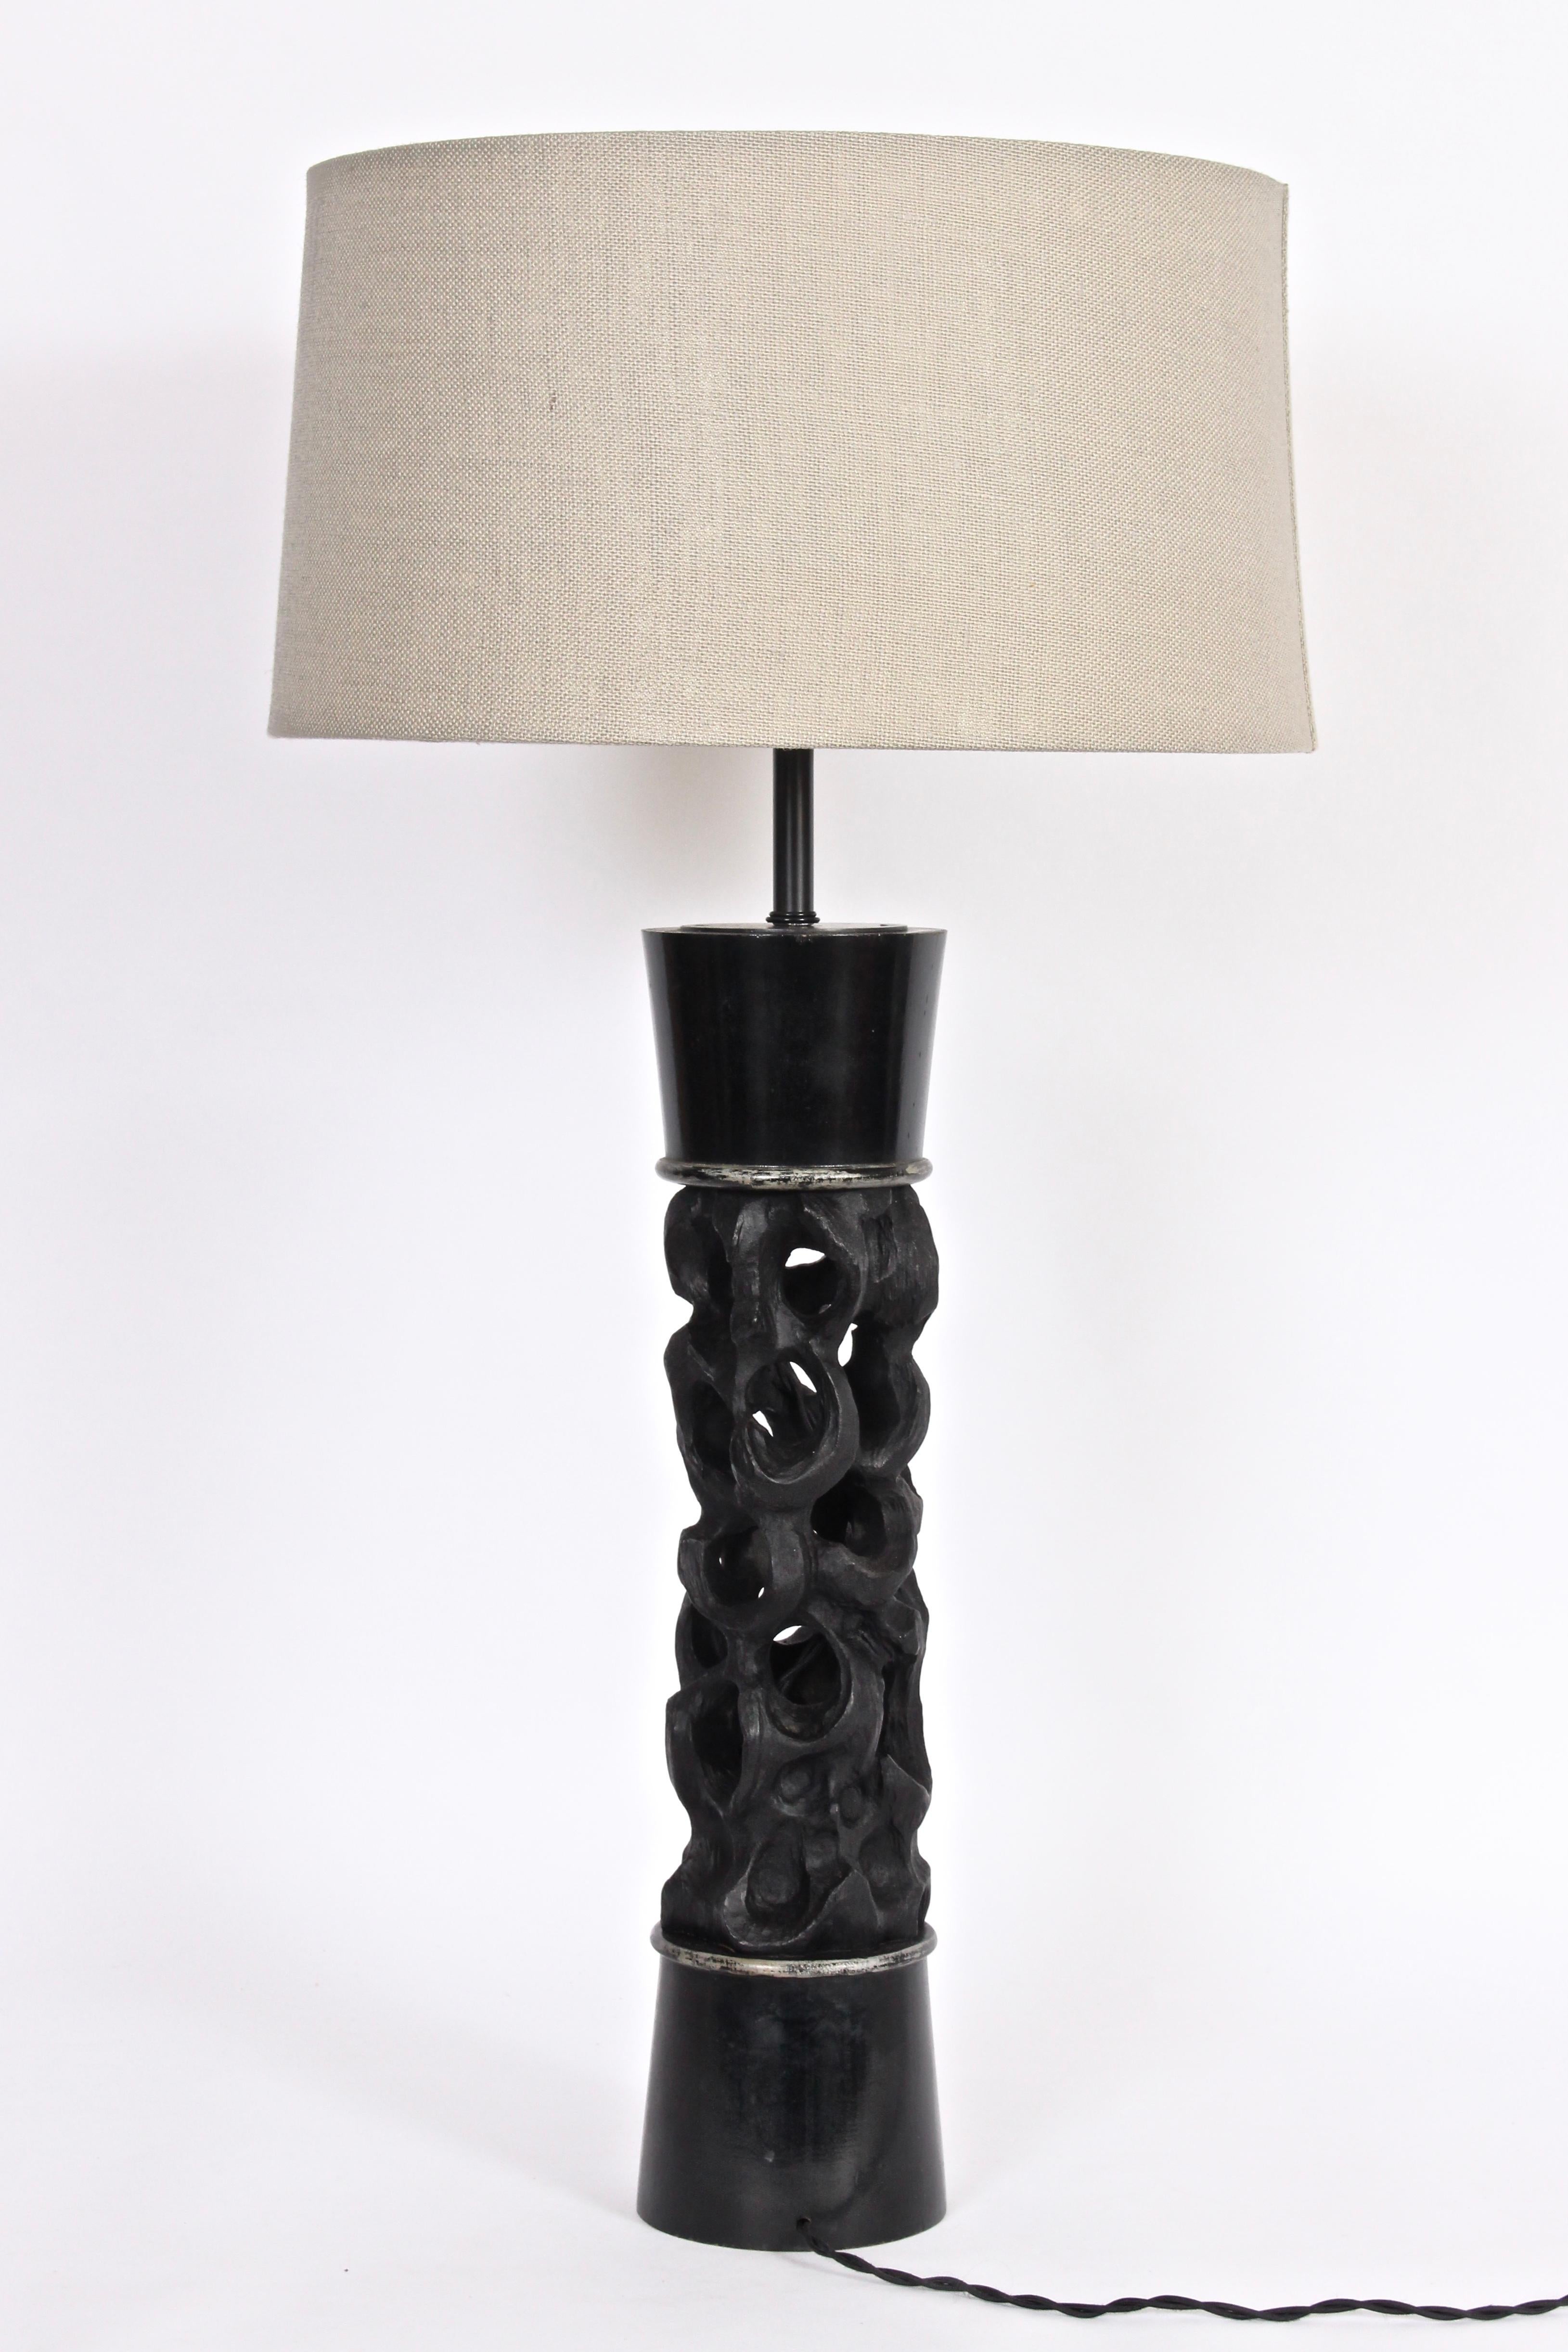 Substantial James Mont Pierced Column Ebonized Wood Table Lamp, C. 1950 For Sale 5